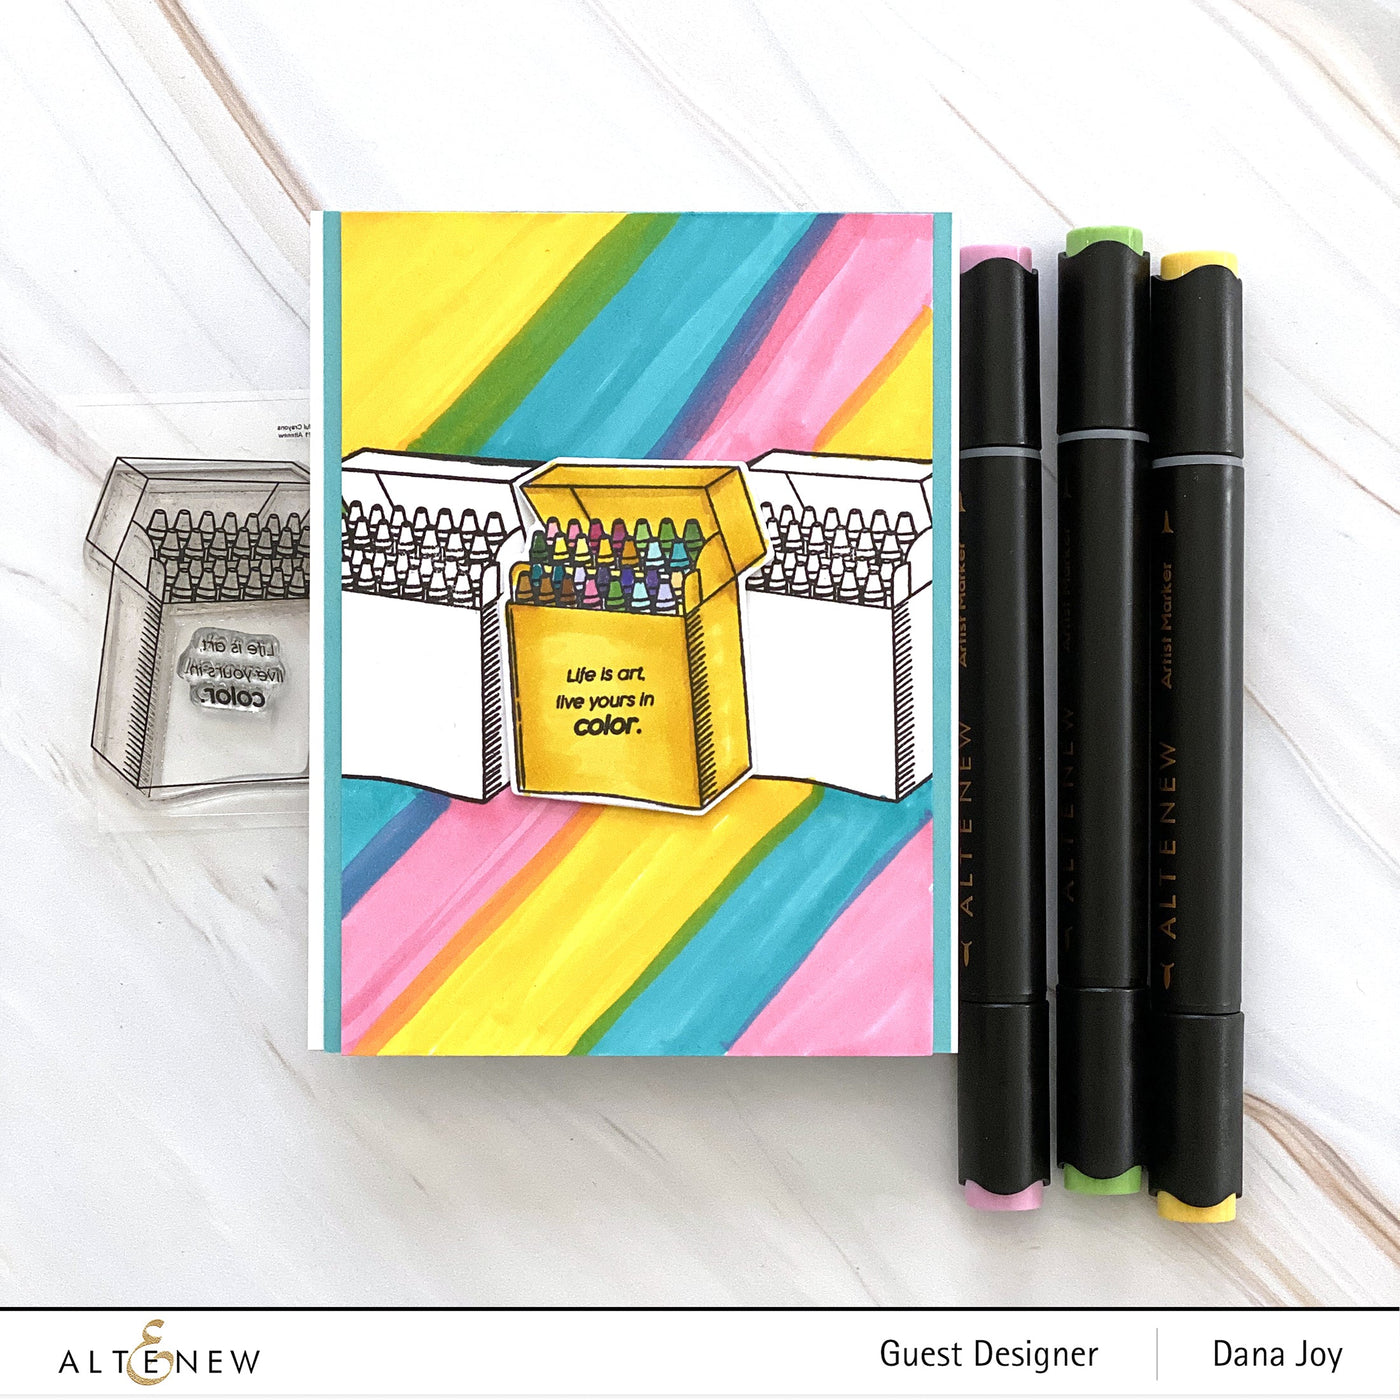 Stamp & Die Bundle Colorful Crayons